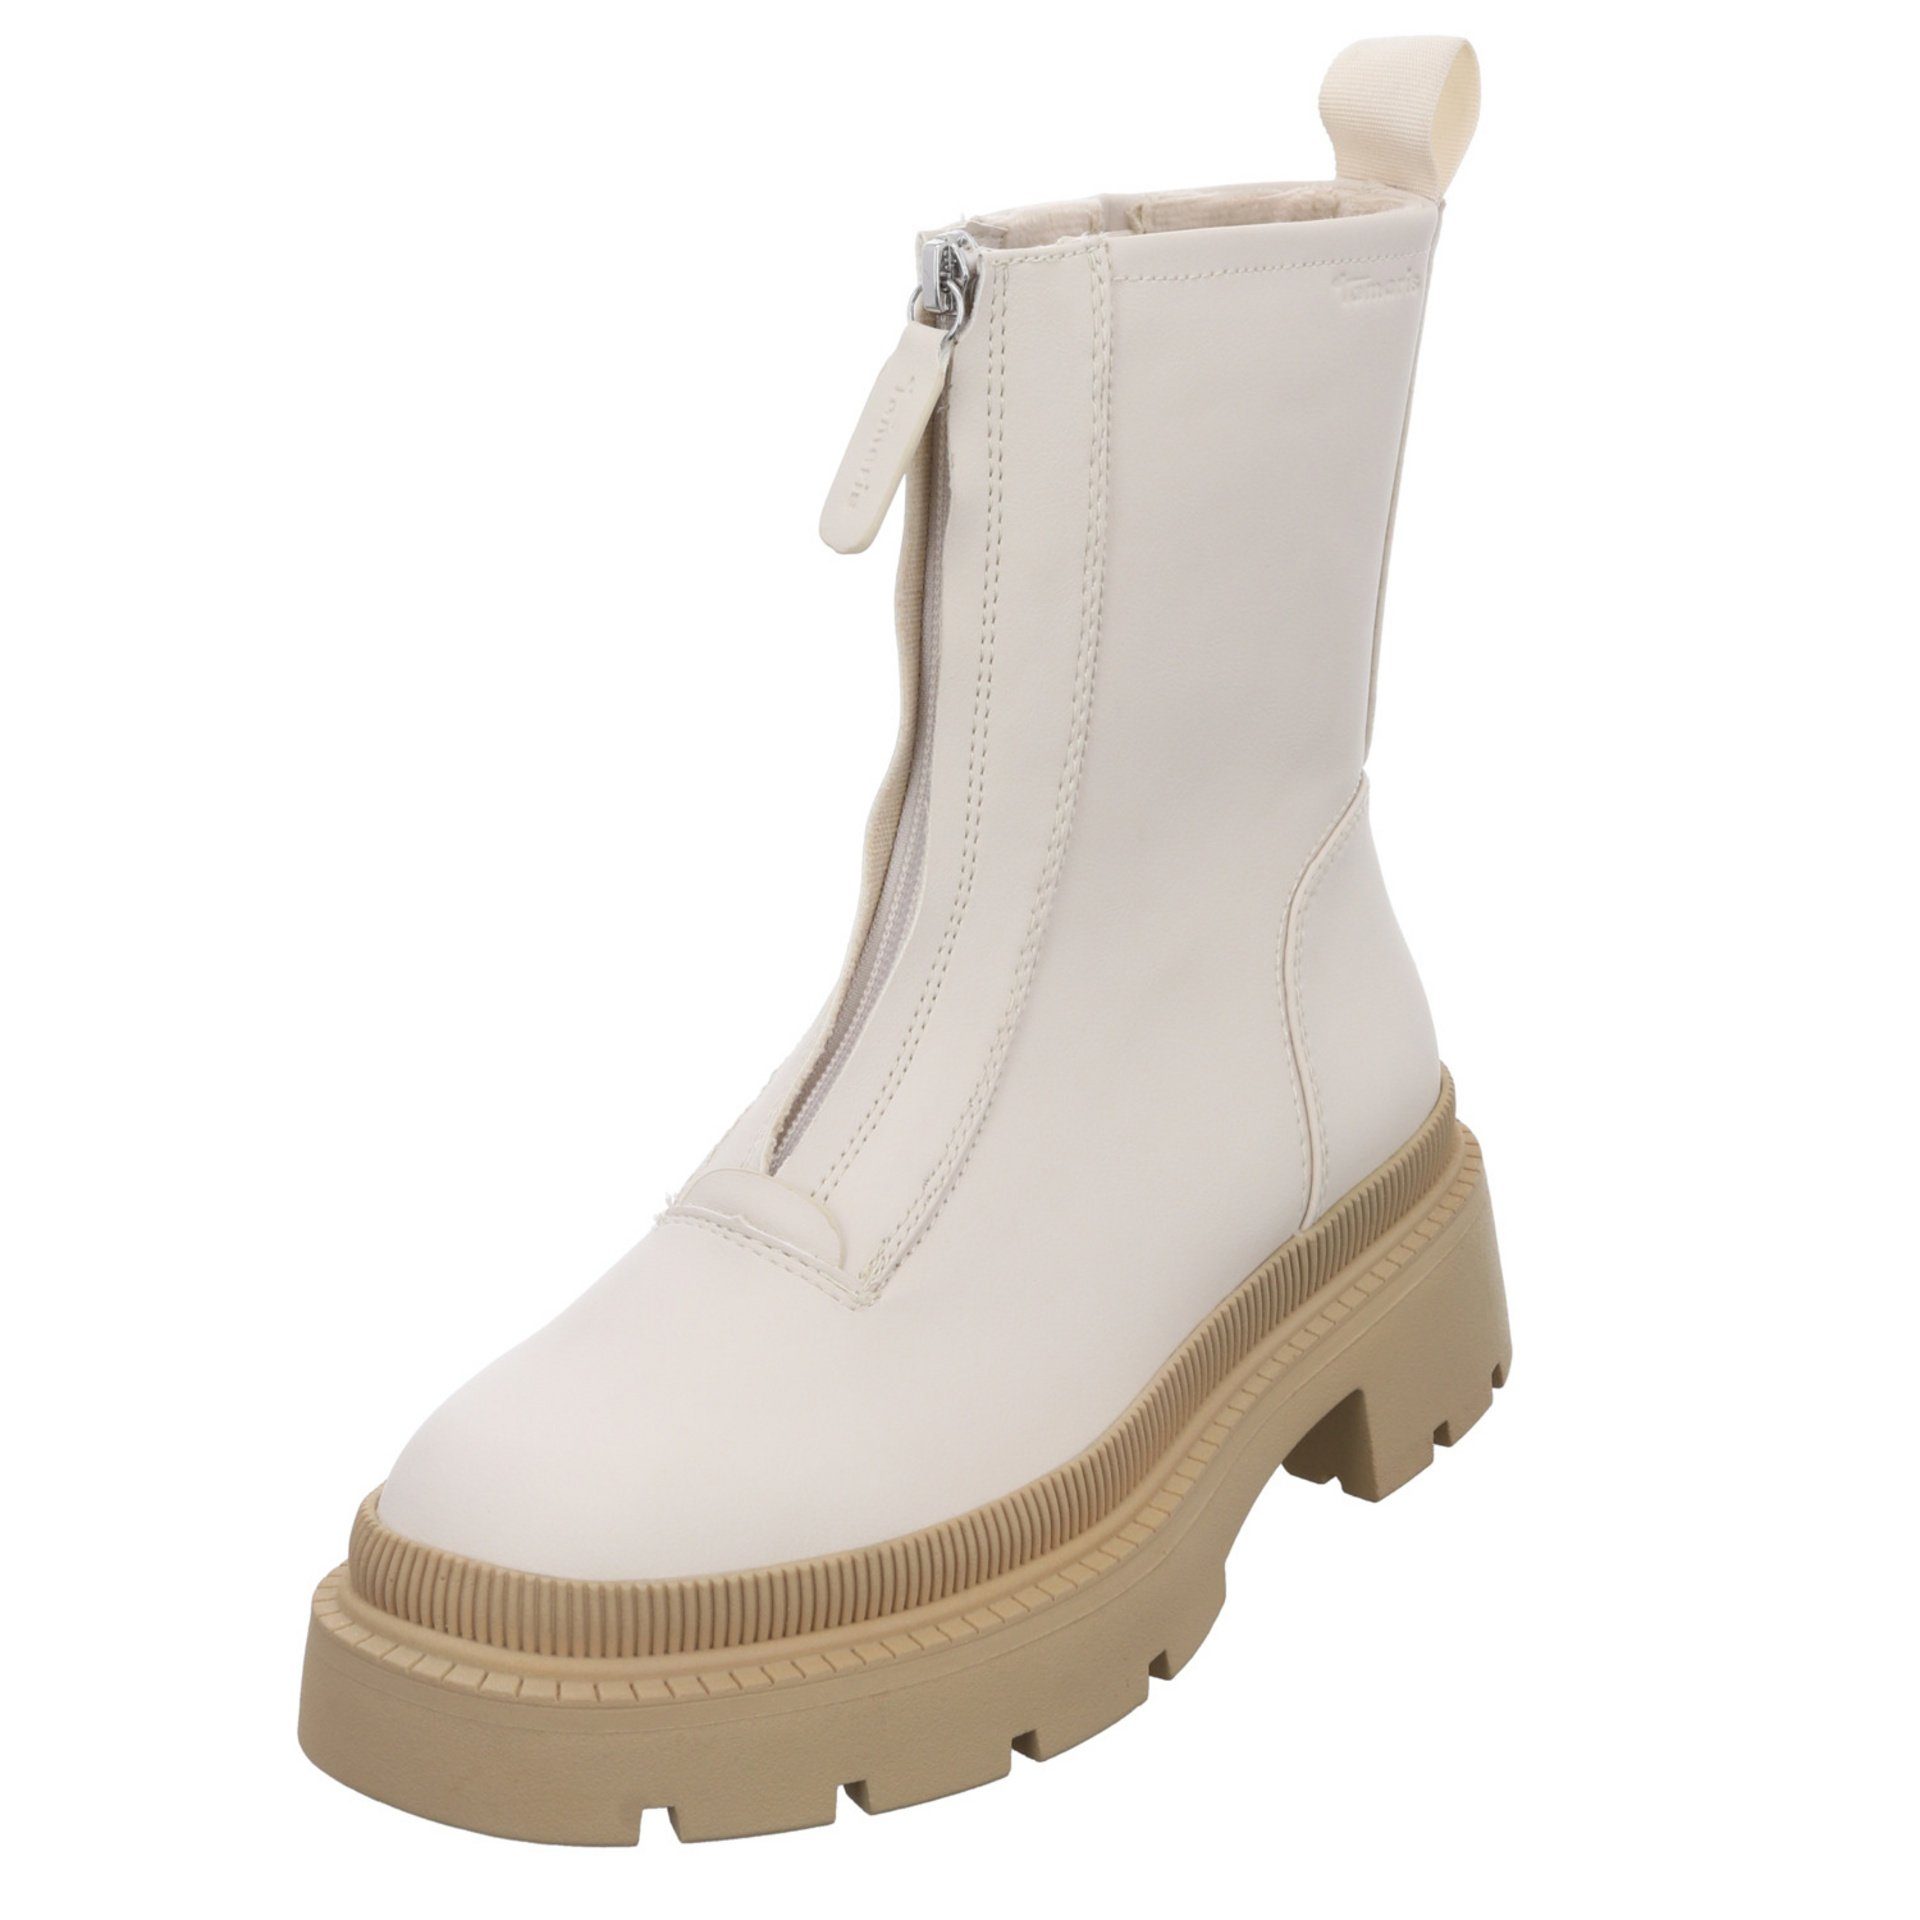 Tamaris Damen Stiefel Schuhe Boots Elegant Freizeit Stiefel Synthetik IVORY/BEIGE (21203664)